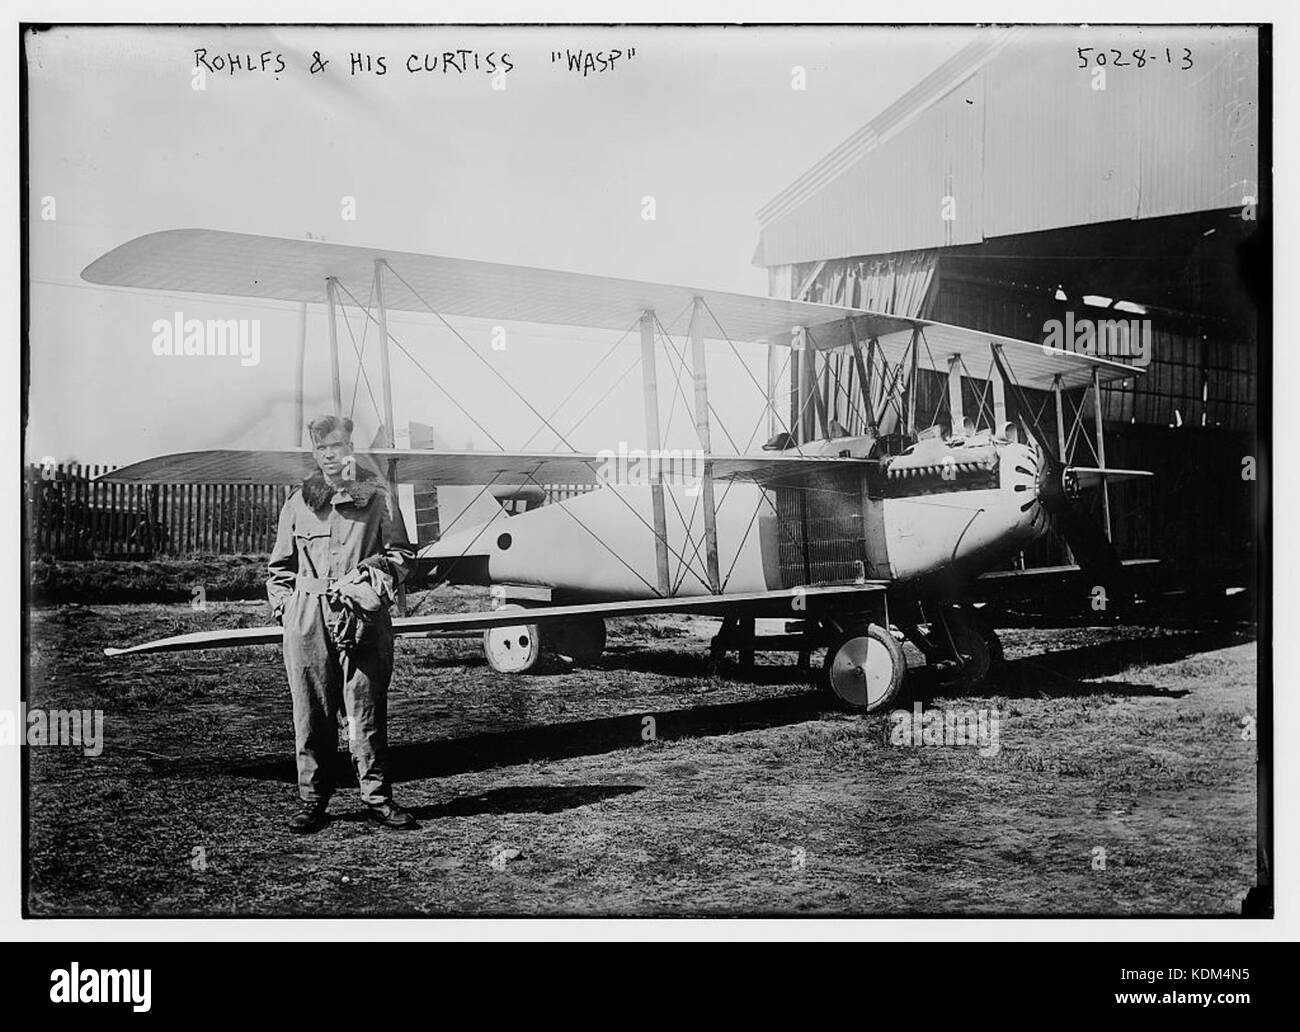 Roland Rohlfs le 18 septembre 1919, à côté de la Curtiss 18T 2 Wasp, US Navy BuNo UN 3325 dans lequel il a établi un record d'altitude Banque D'Images